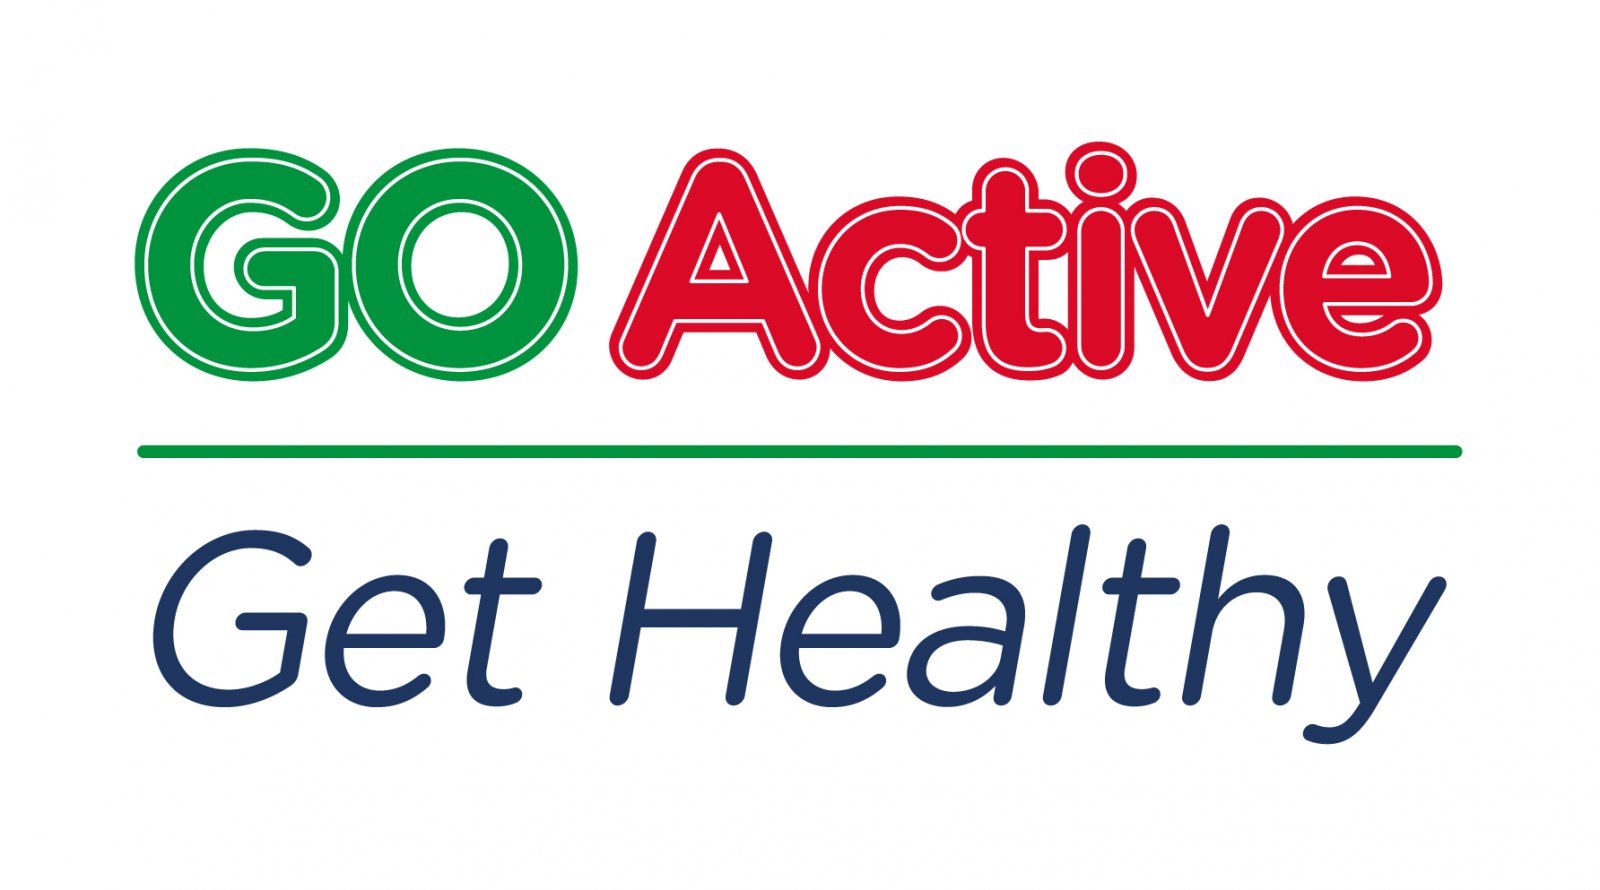 Go Active Get Healthy Logo